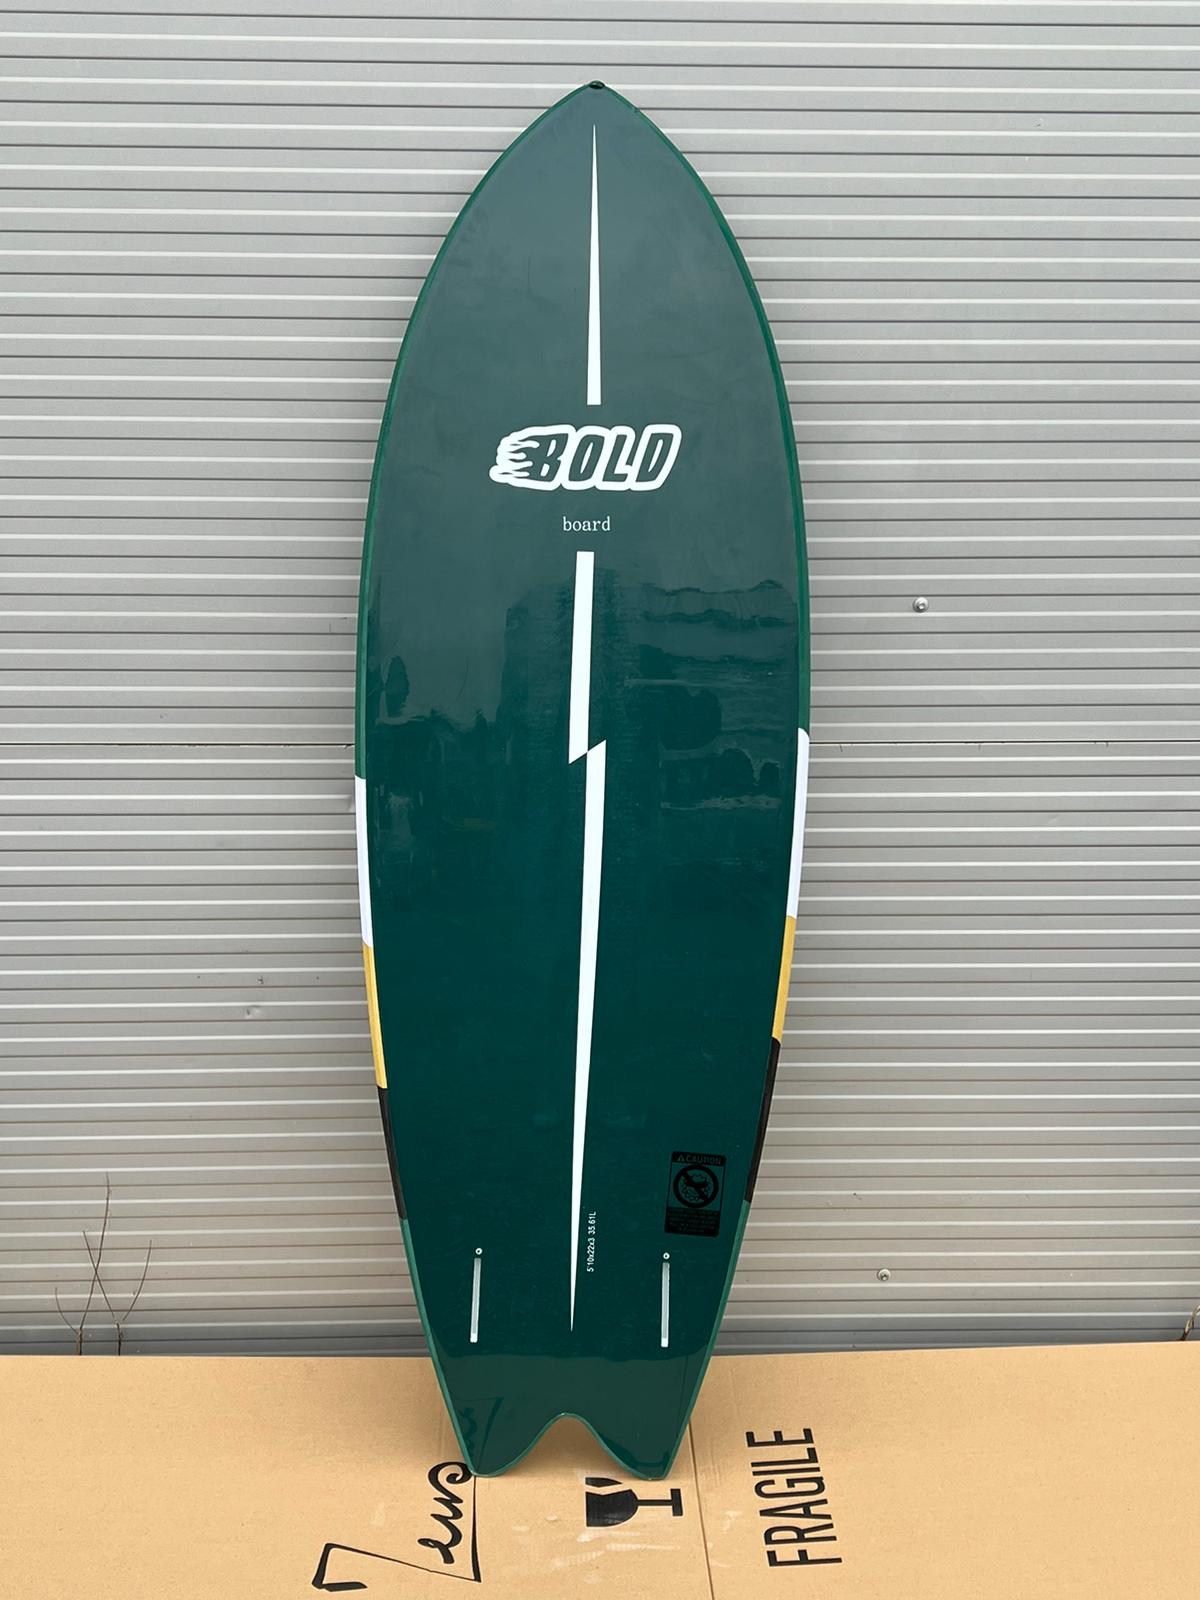 Planche de Surf Occasion Zeus - 5'10 Boldproduct_type#surf_#surfshop#_zeus-surfboards_